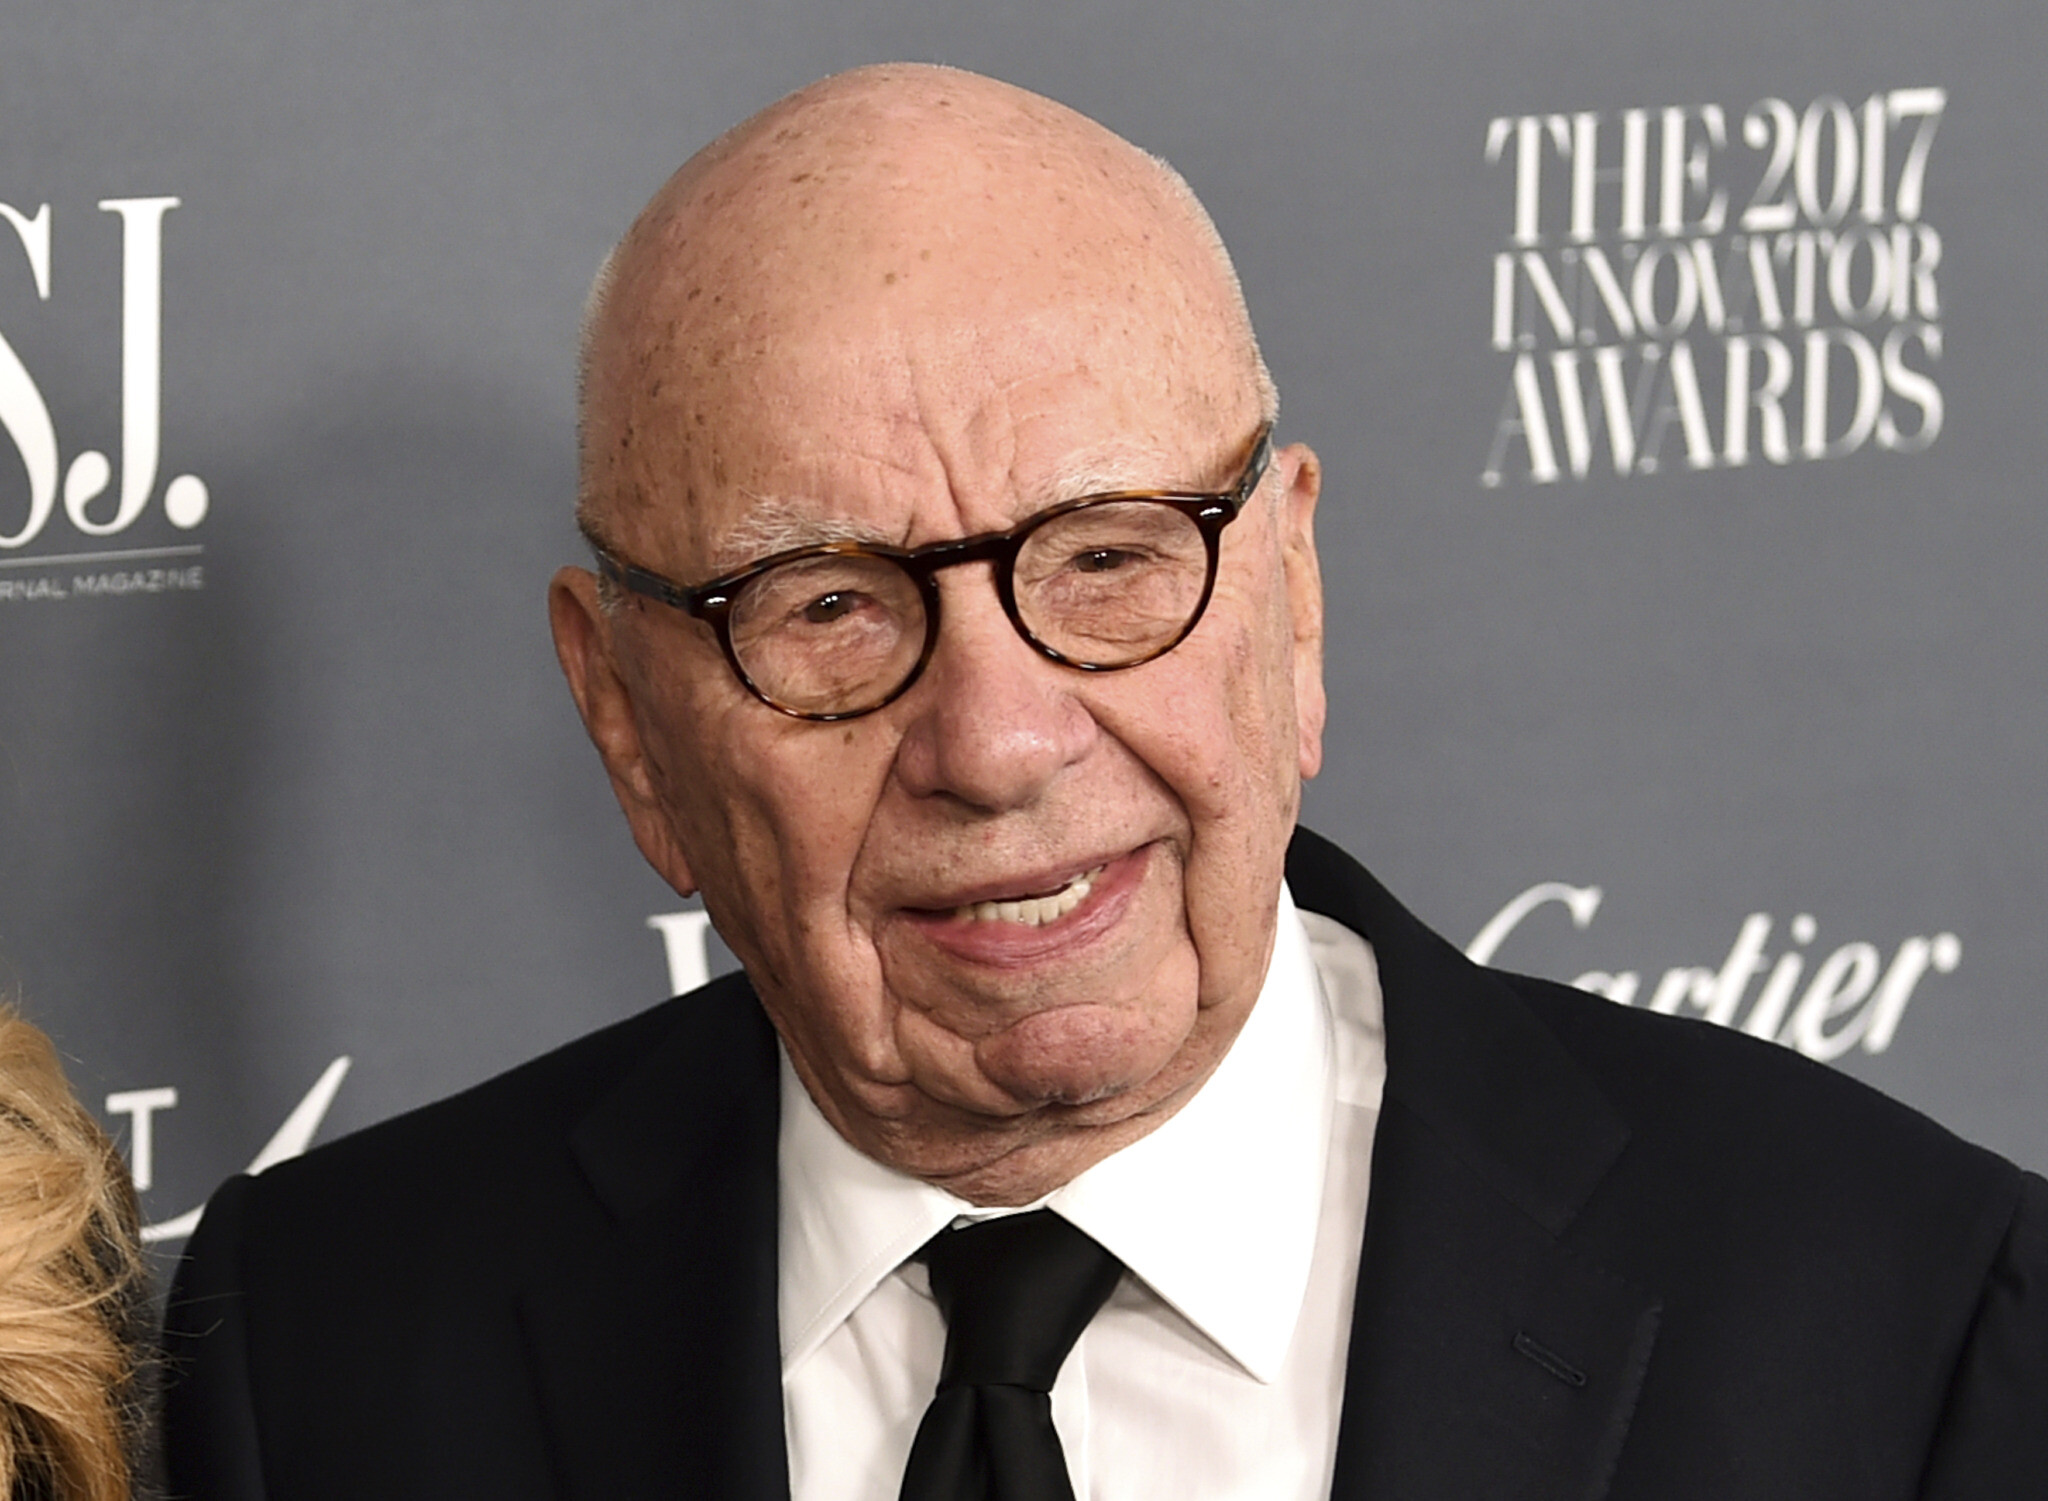 Fox News founder Rupert Murdoch steps down as chairman